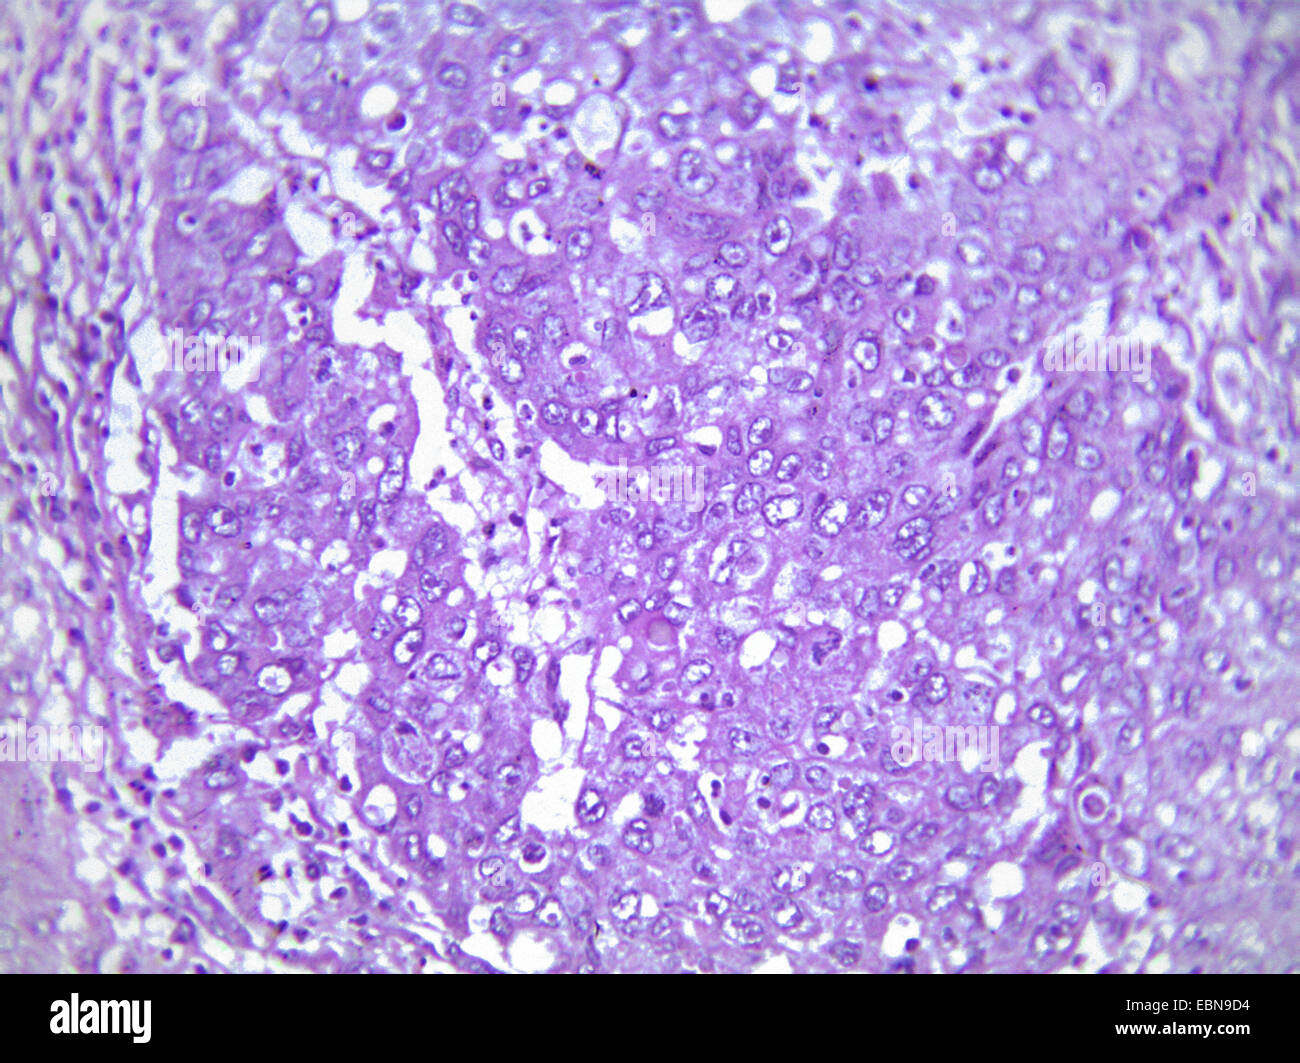 El cáncer hepático primario, sección microscópico, 400 x Foto de stock